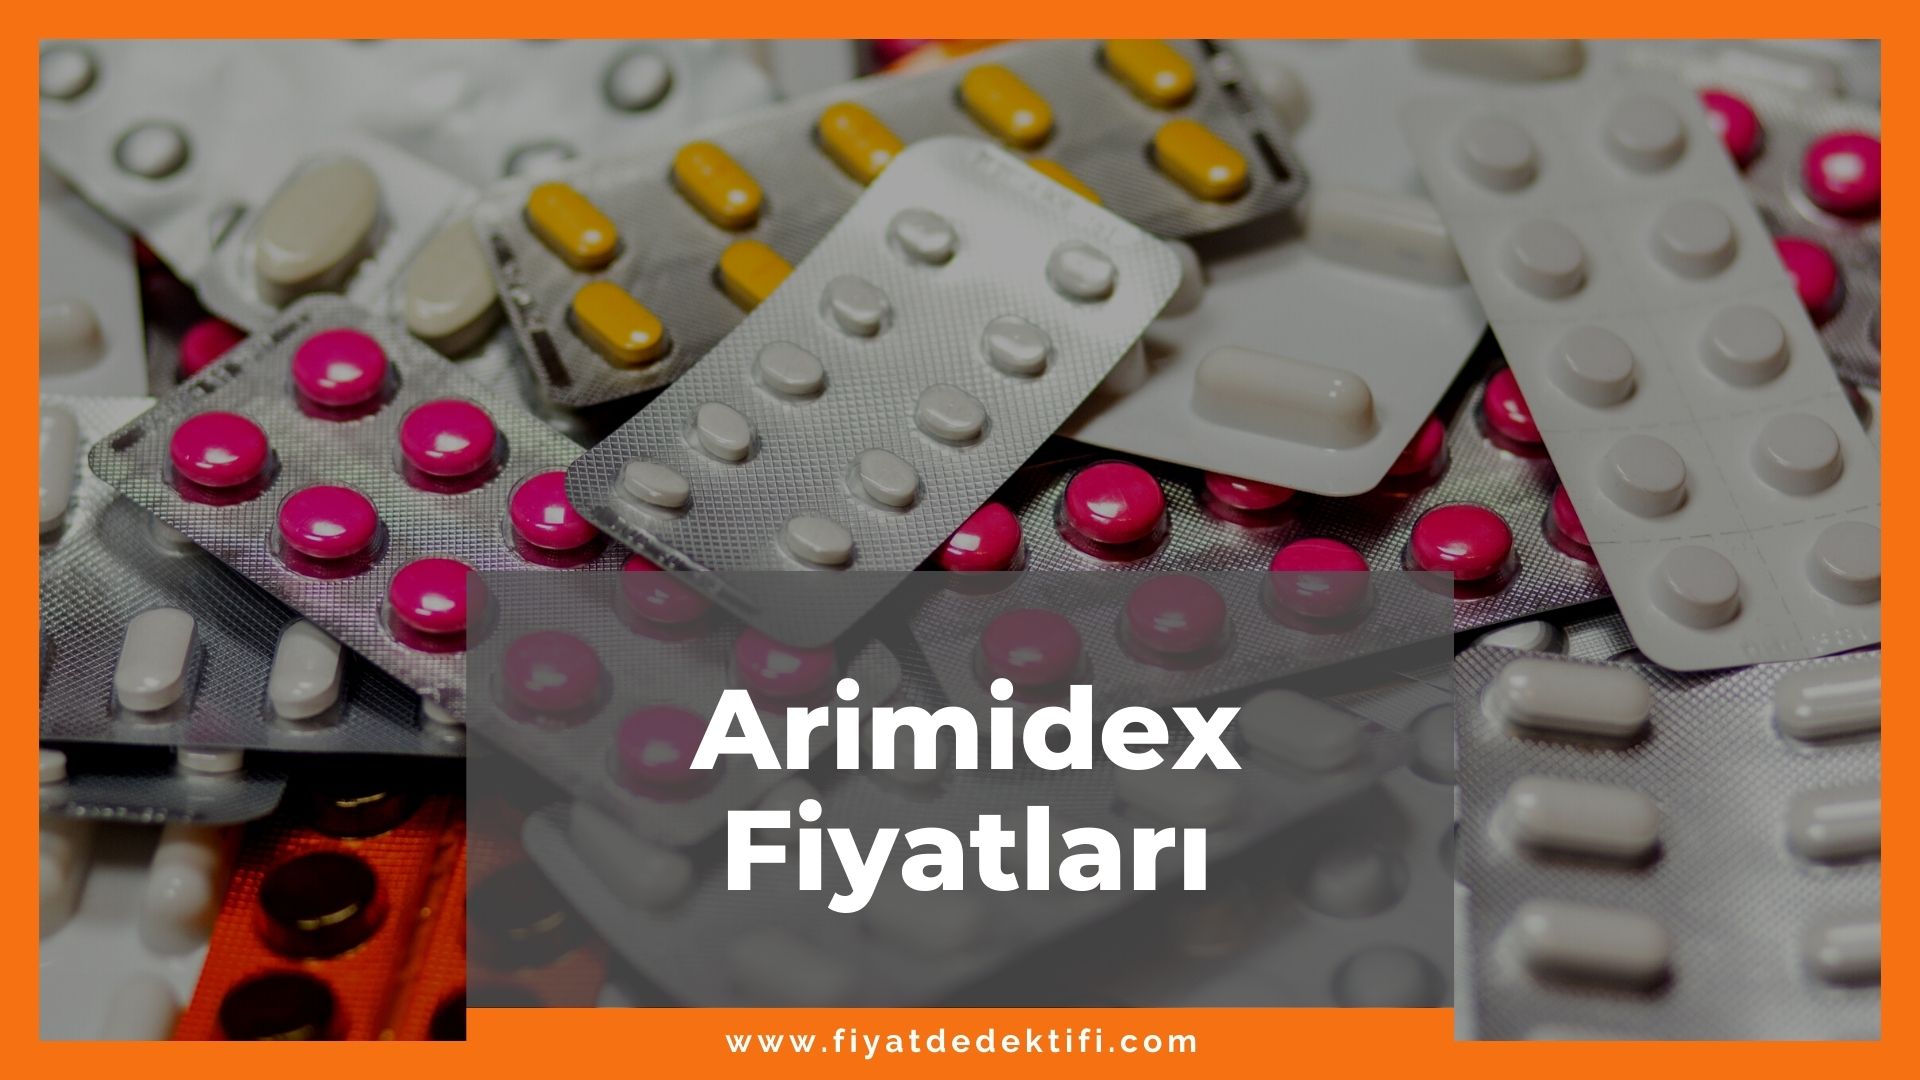 Arimidex Fiyat 2021, Arimidex Eczane Fiyatı, Arimidex 1 mg Fiyatı, arimidex zamlandı mı, arimidex zamlı fiyatı ne kadar kaç tl oldu